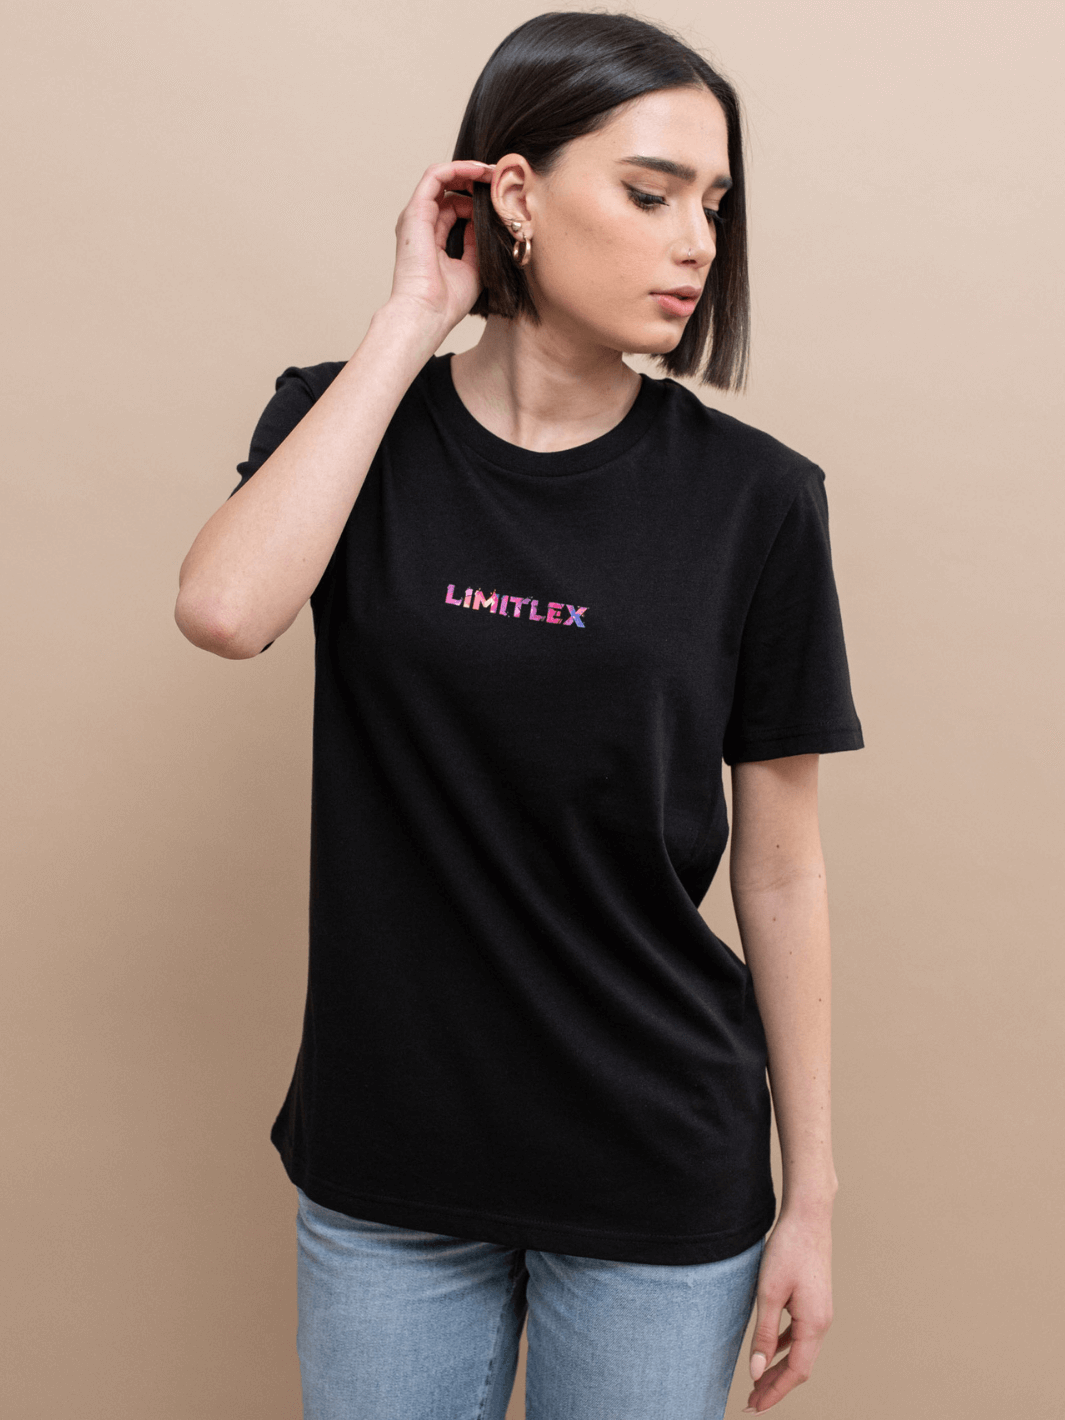 T-shirt essential nera con scritta Limitlex sul petto.